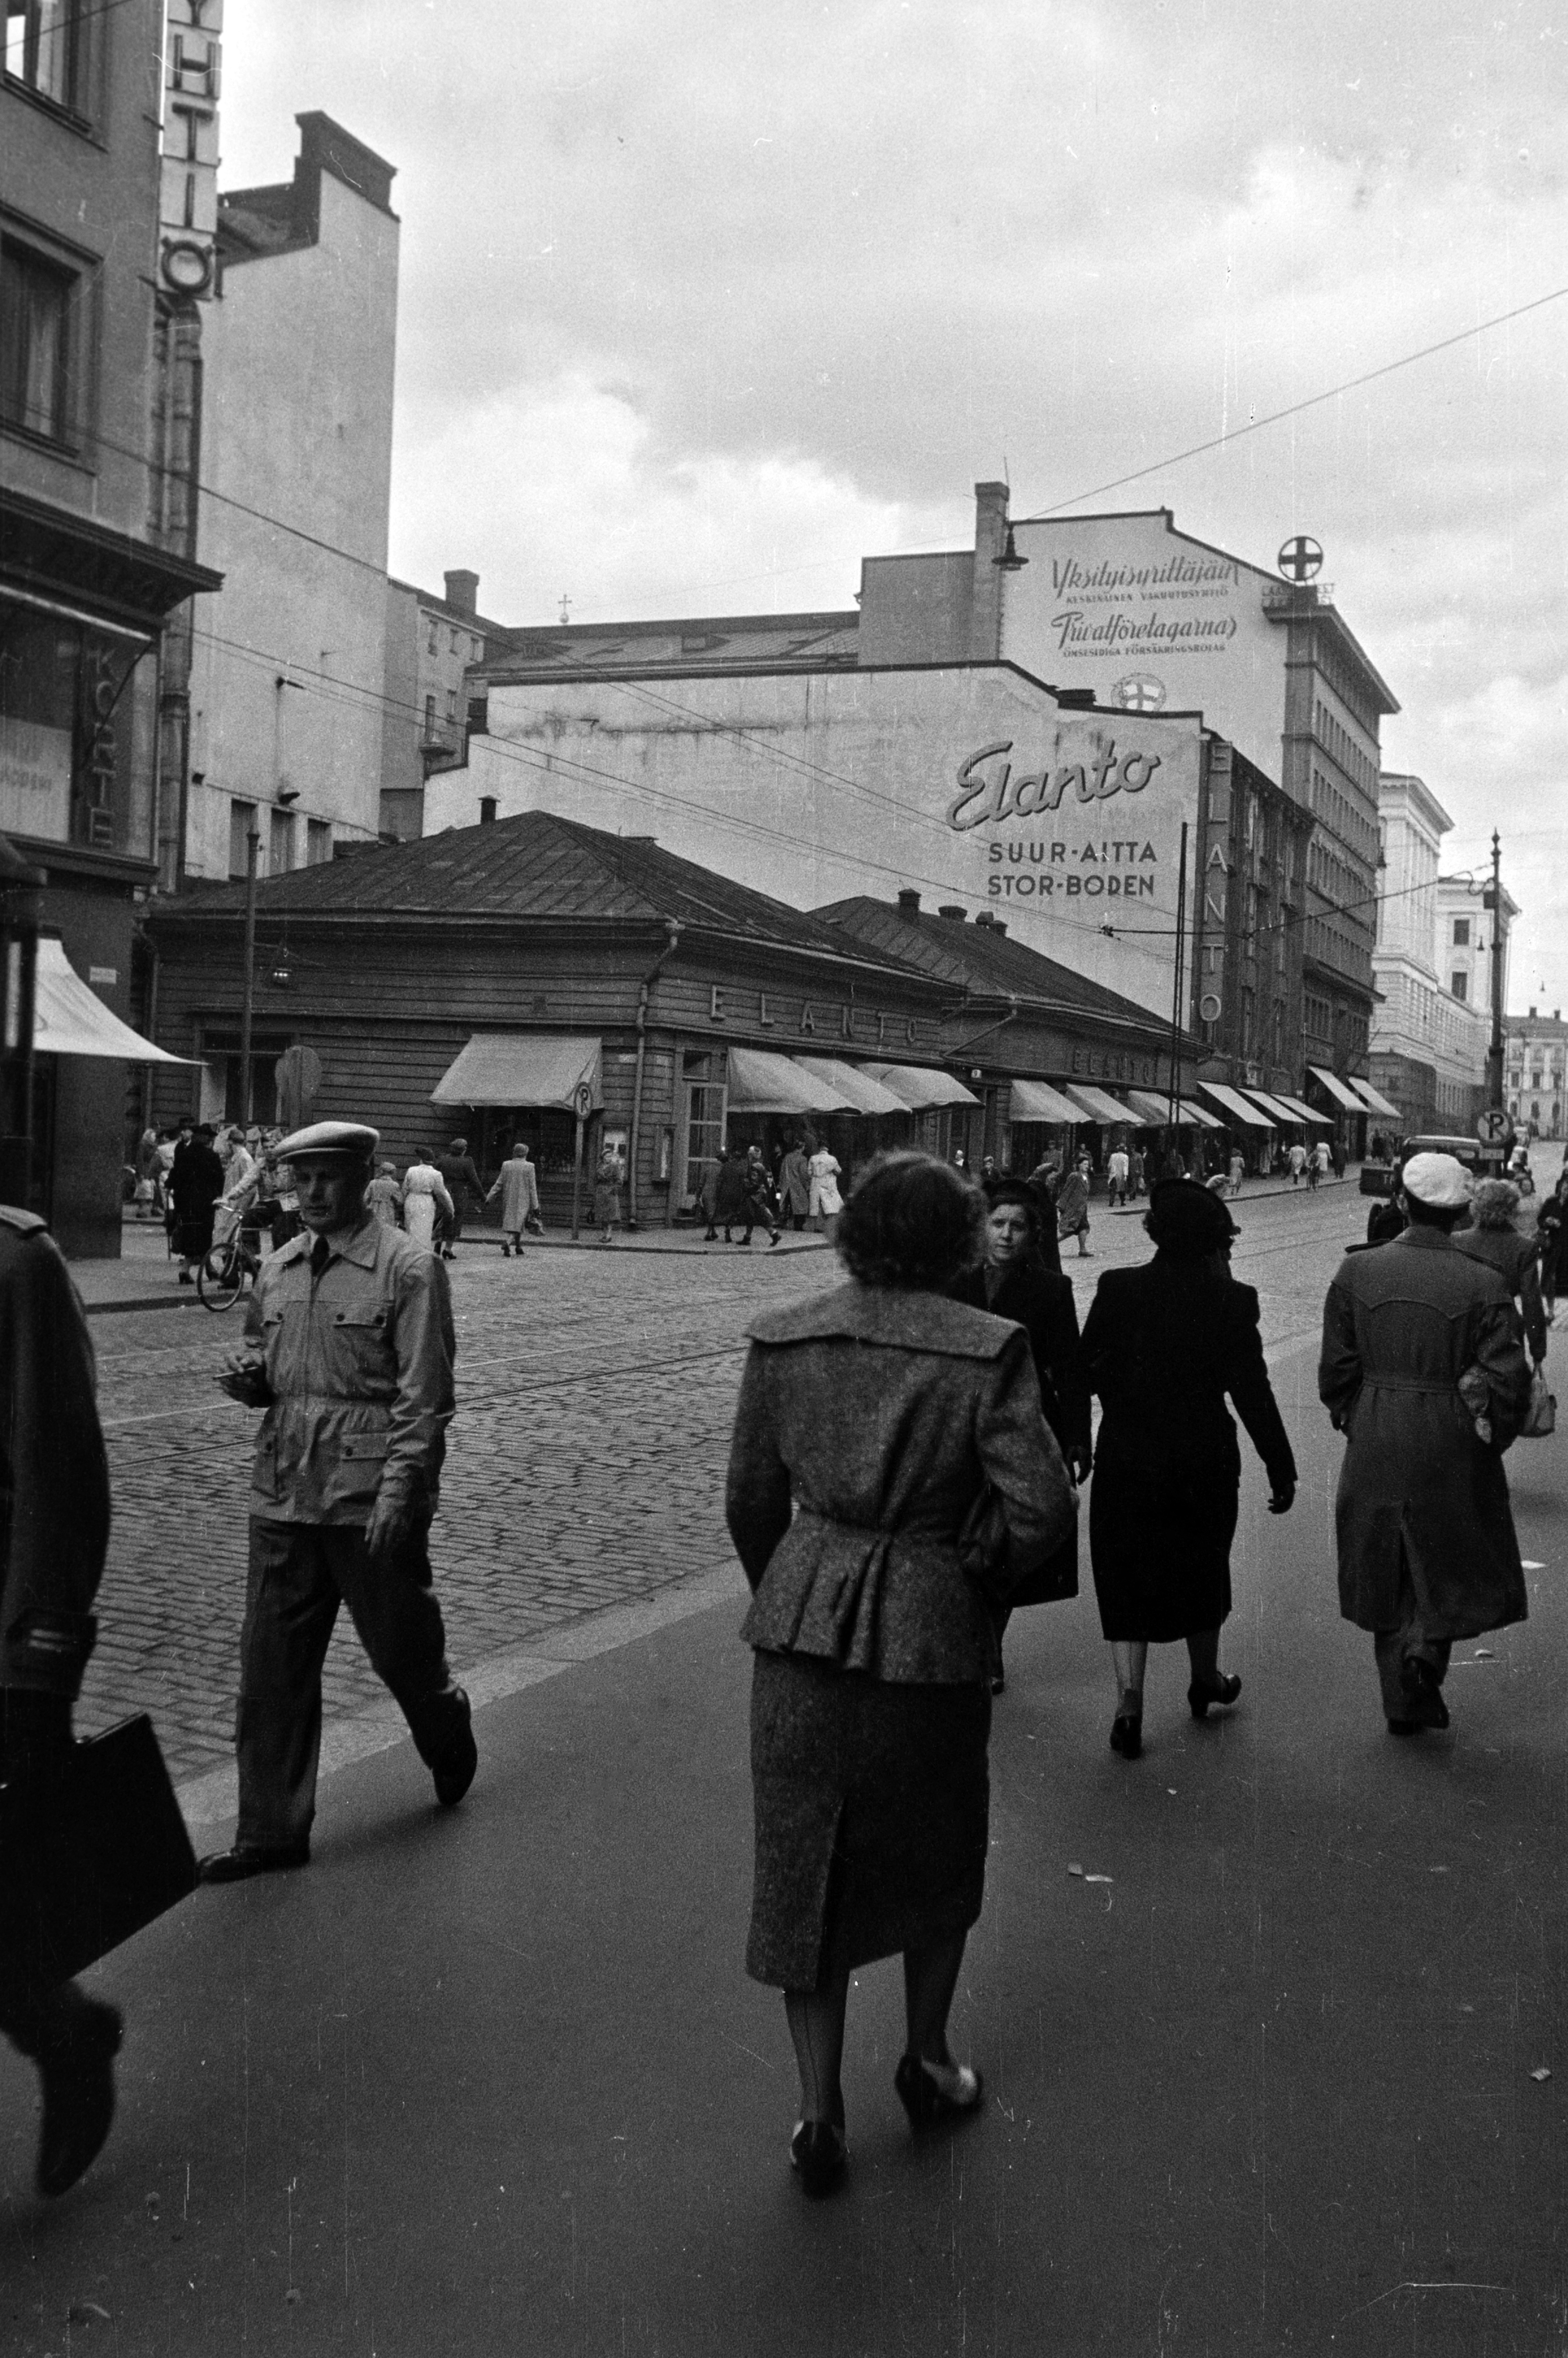 Kluuvikatu 5. - Aleksanterinkatu 9, 7. Näkymä Aleksanterinkatua itään. Elannon myymälä ja Elannon suur-aitta. Puurakennukset purettiin syksyllä 1950 ja paikalle rakennettiin Elannon tavaratalo.